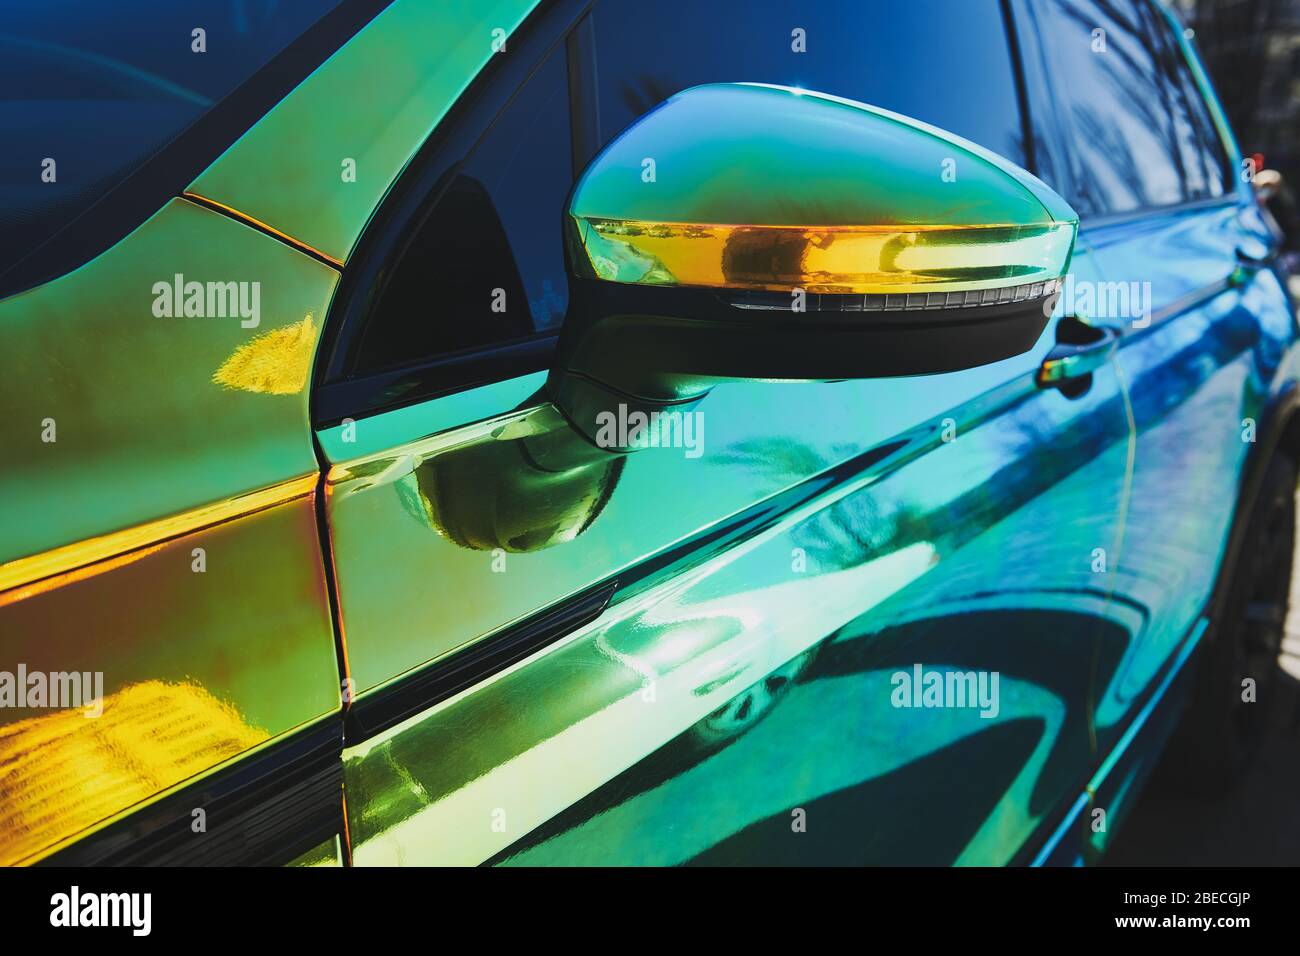 https://c8.alamy.com/compde/2becgjp/chameleon-holographischen-farbe-auto-seitenansicht-fahrertur-und-seitenspiegel-nahaufnahme-autoverpackung-autoausstellung-2becgjp.jpg